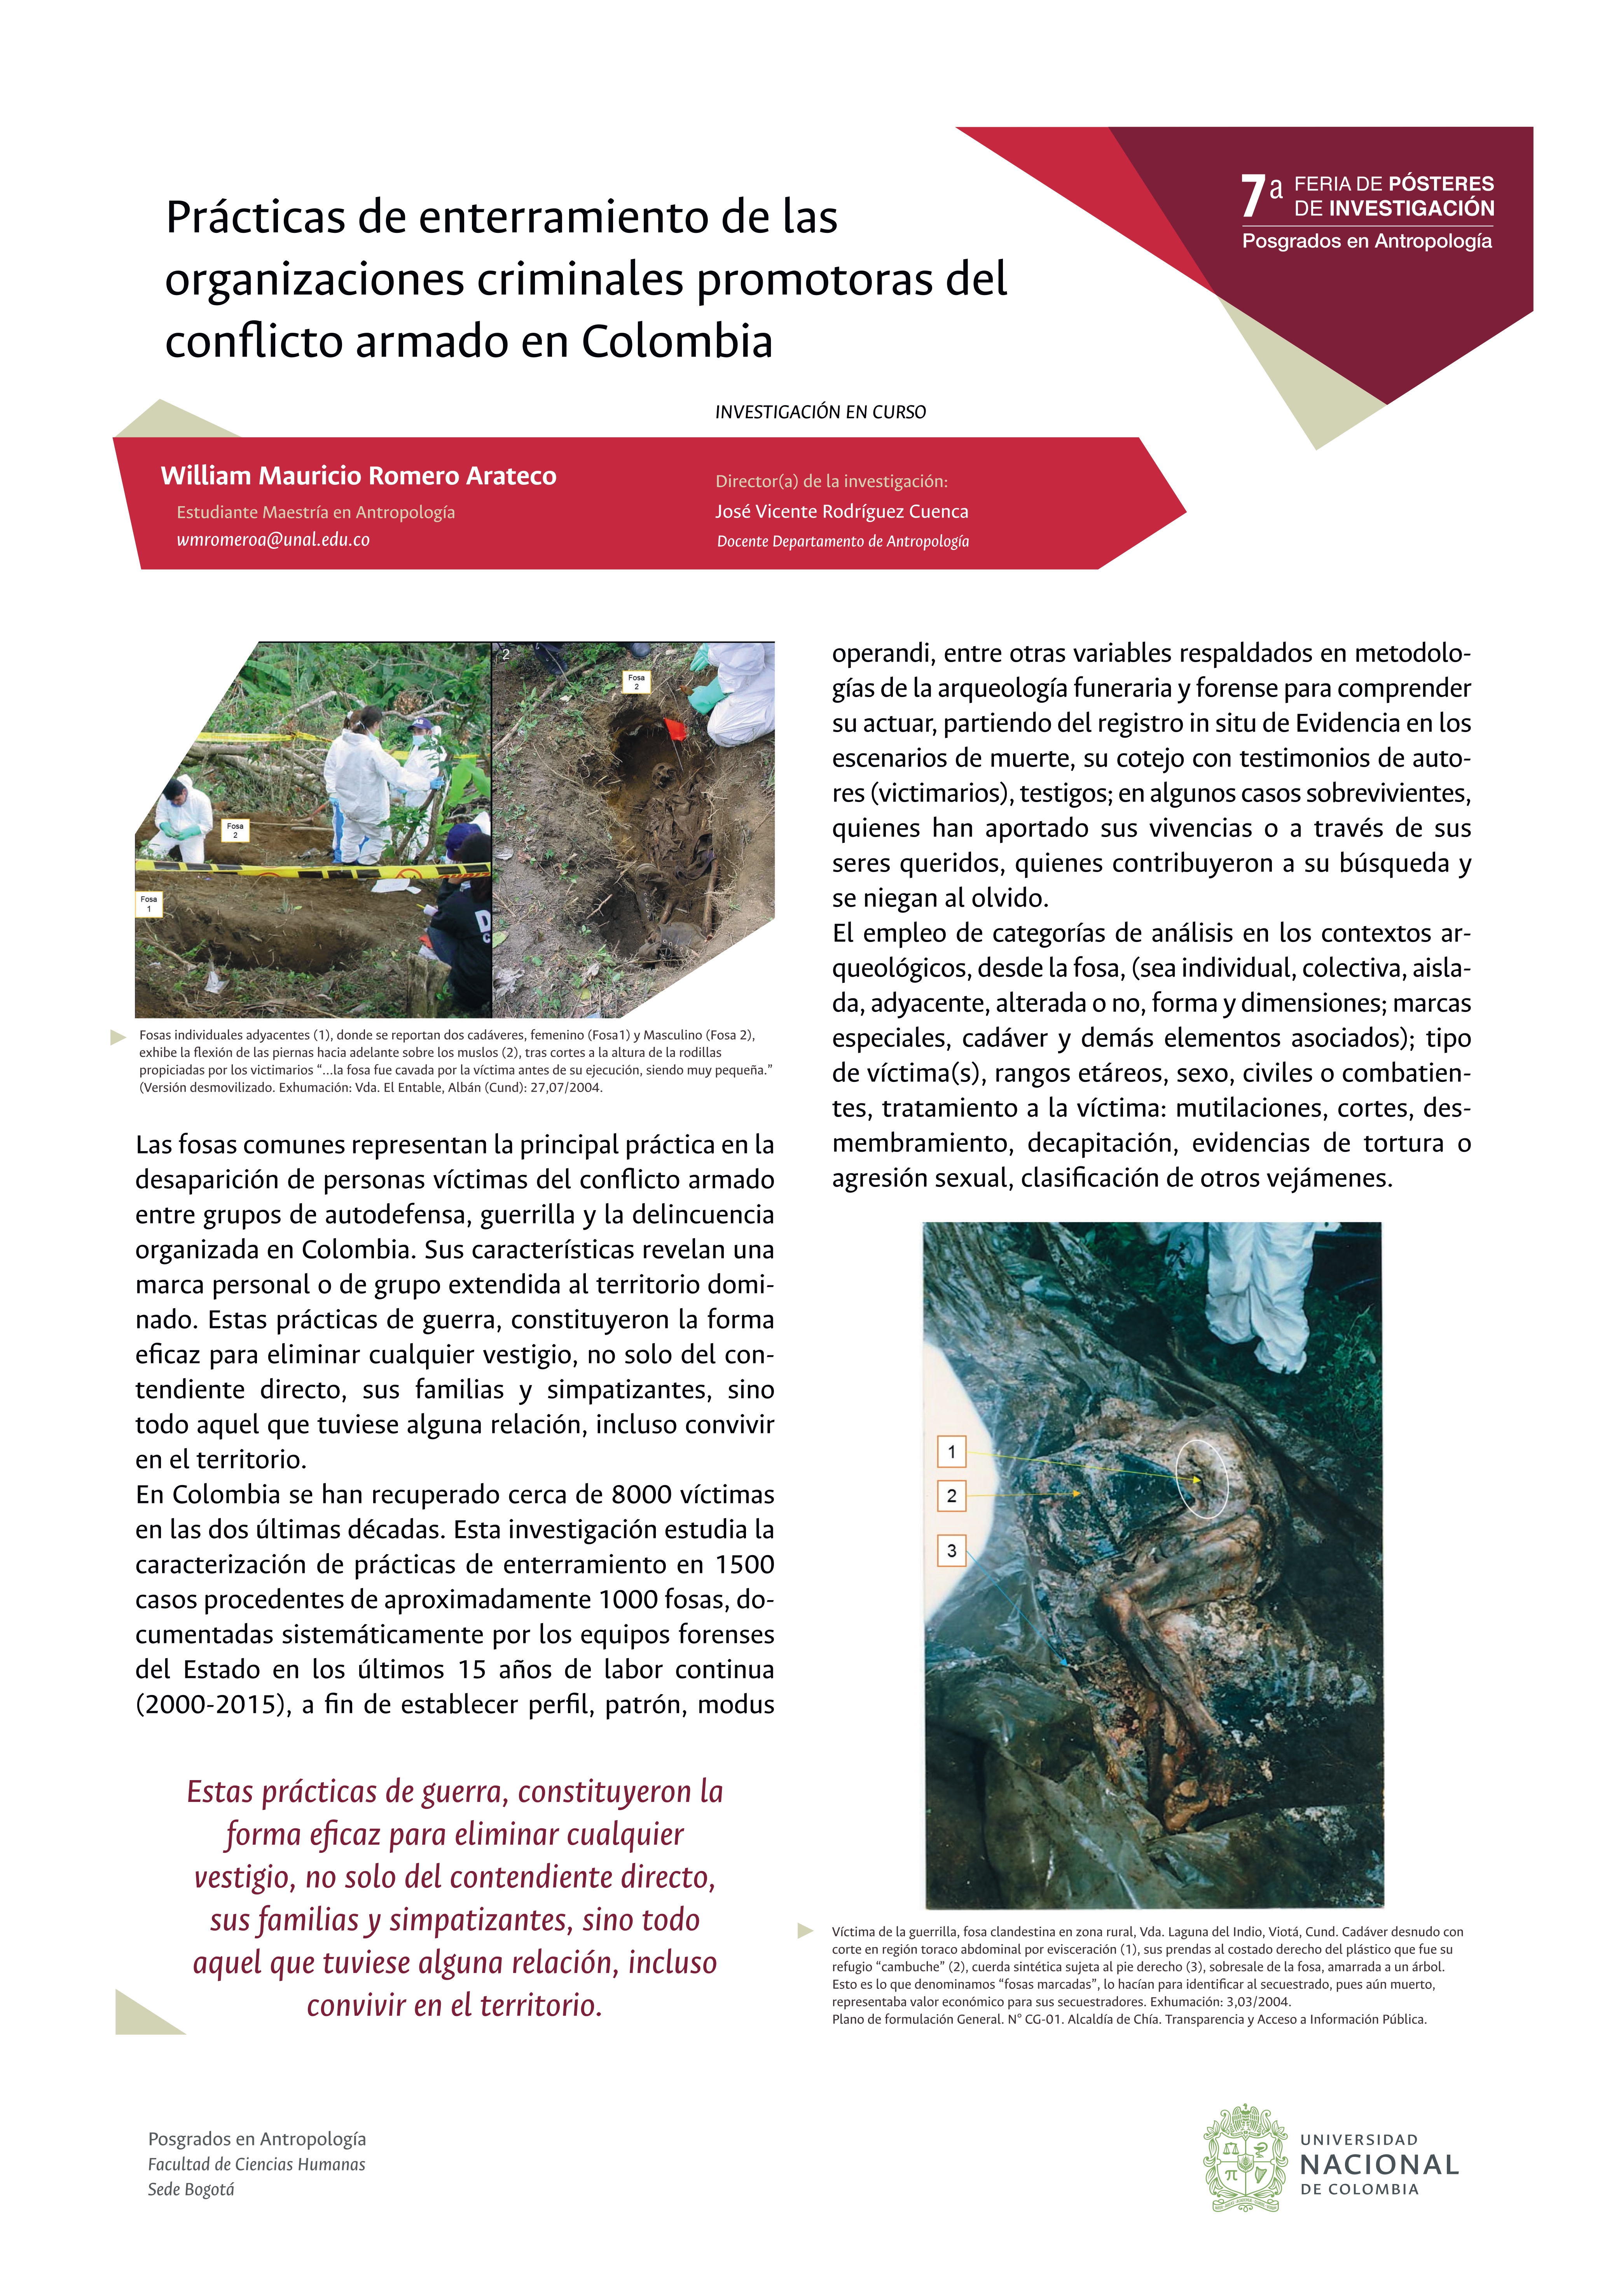 Prácticas de enterramiento de las organizaciones criminales promotoras del conflicto armado en Colombia